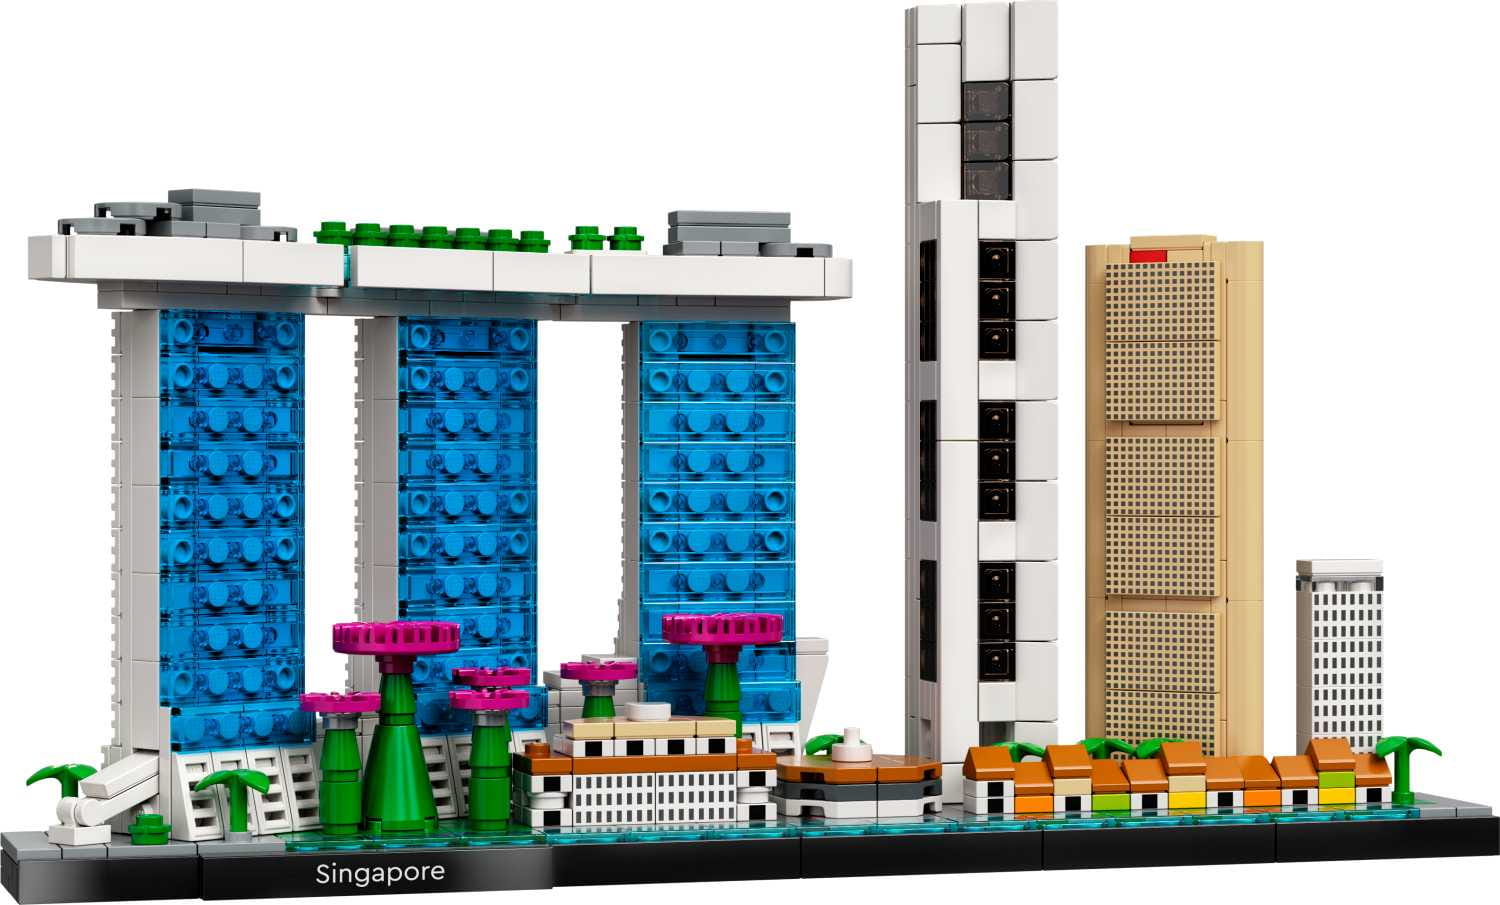 LEGO Architecture Singapur